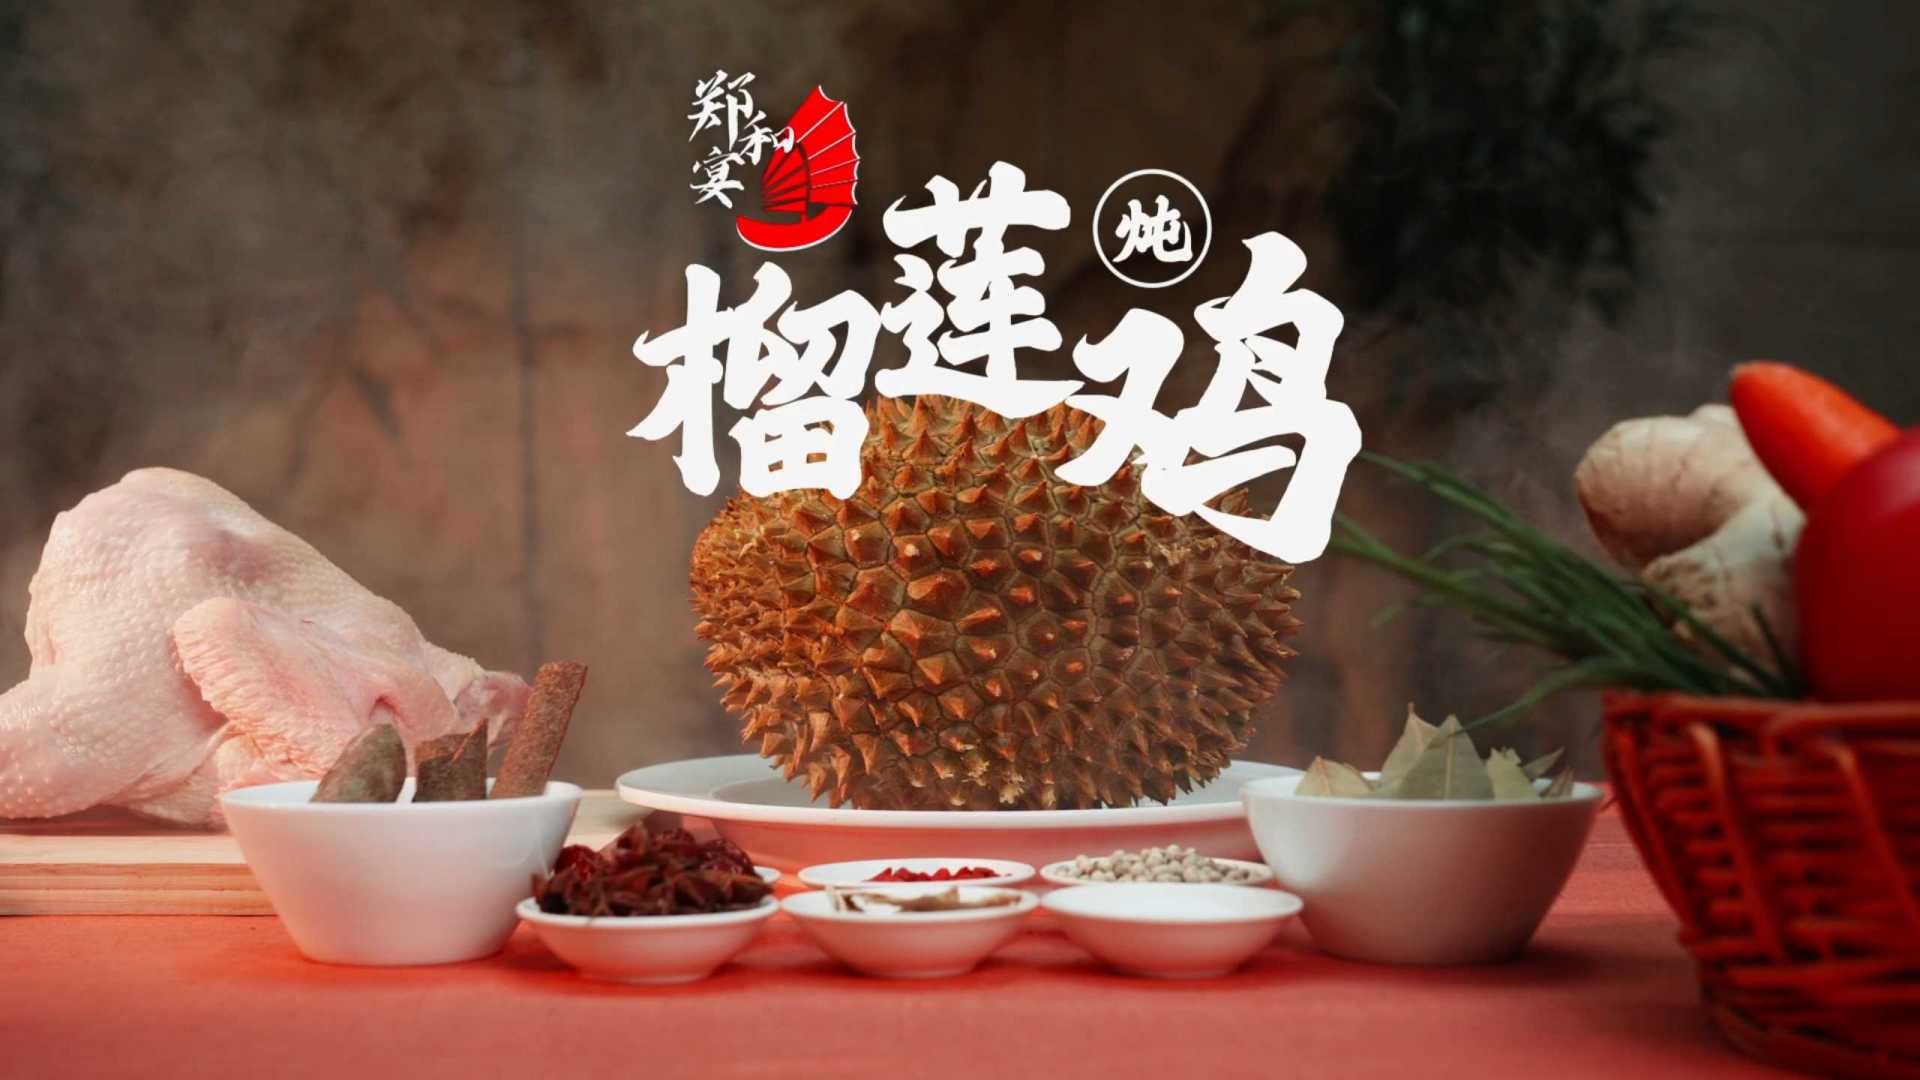 美食宣传片《郑和宴-榴莲炖鸡》